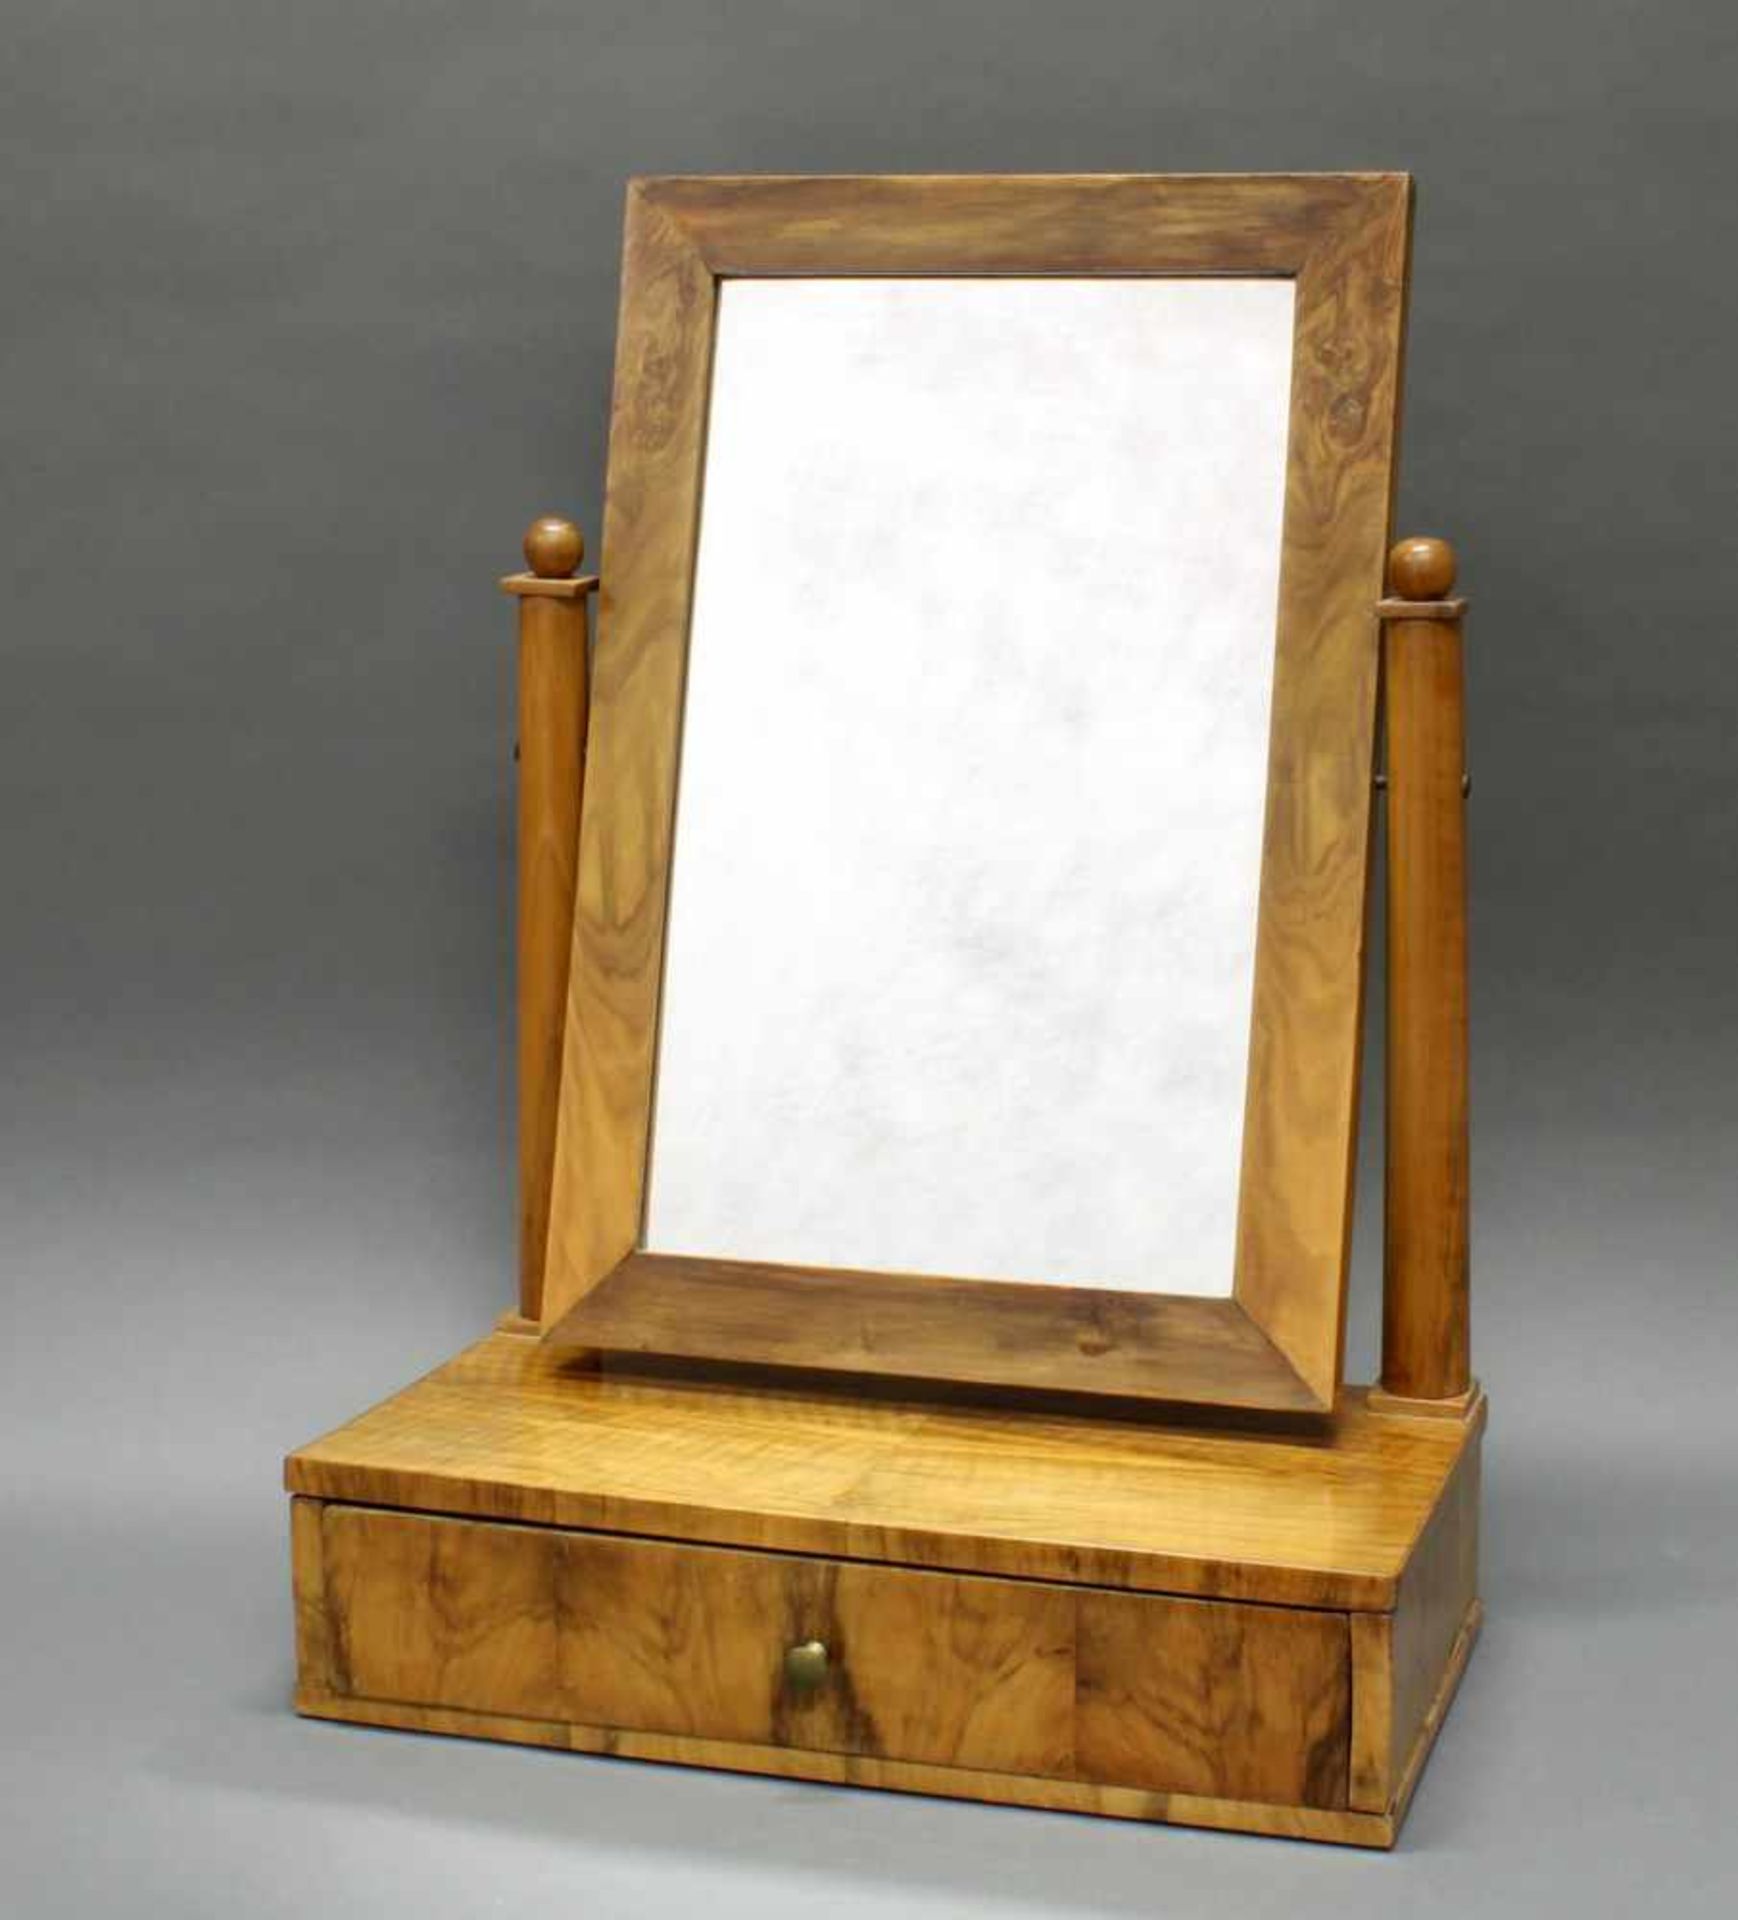 Tischspiegel, Biedermeier, um 1840, Nussholz, ein Schubfach, 62 x 44 x 23.5 cm- - -25.00 % buyer's - Image 2 of 2